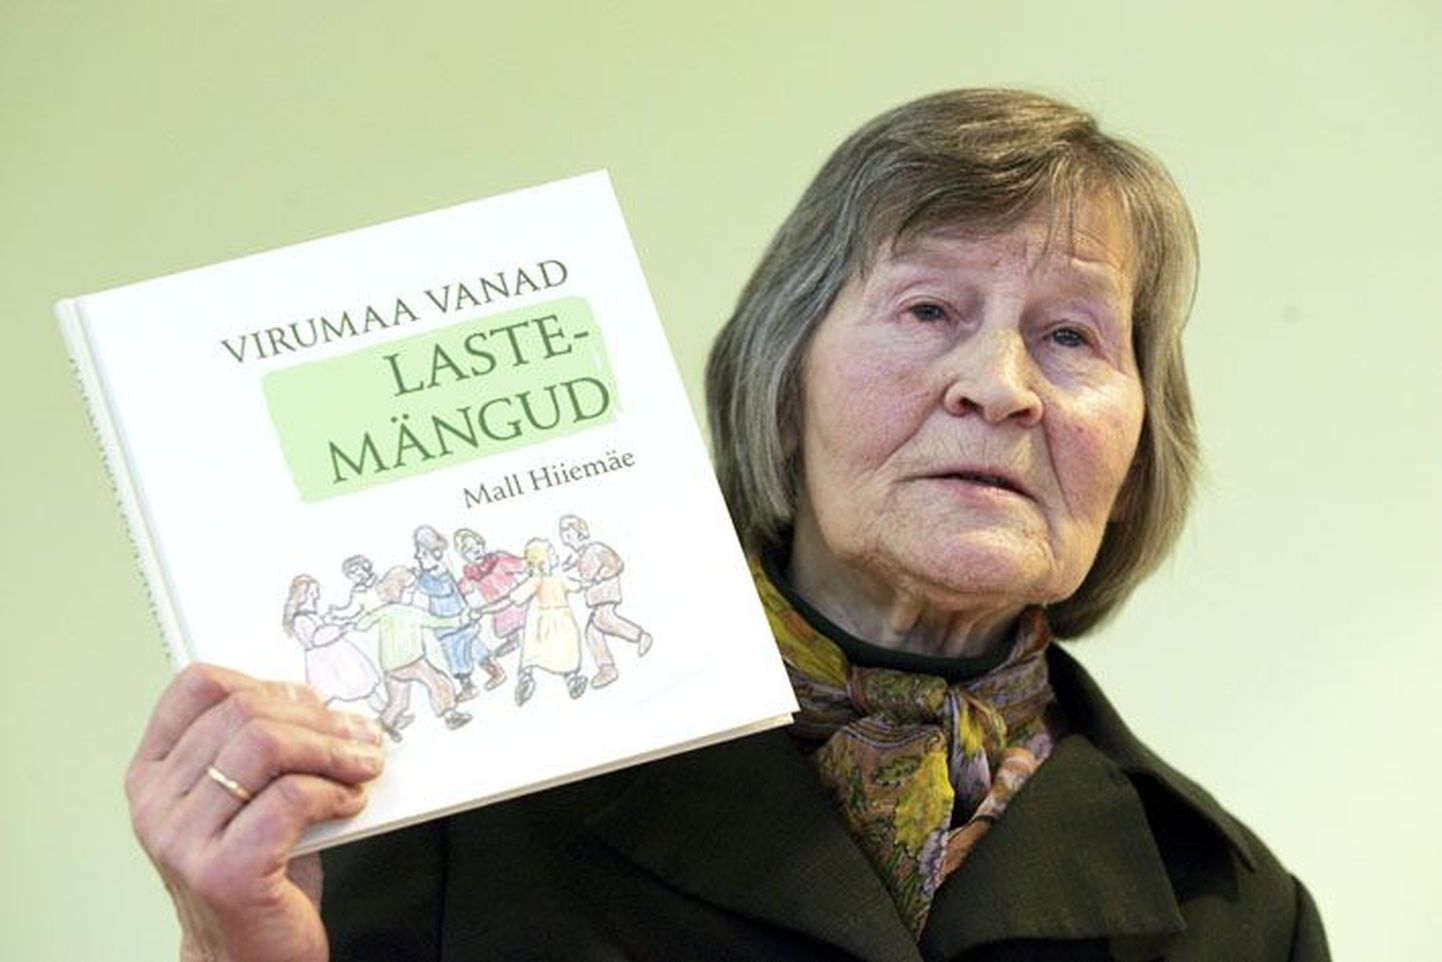 Mall Hiiemäe tutvustamas mängulist raamatut Virumaa laste lõbustustest.